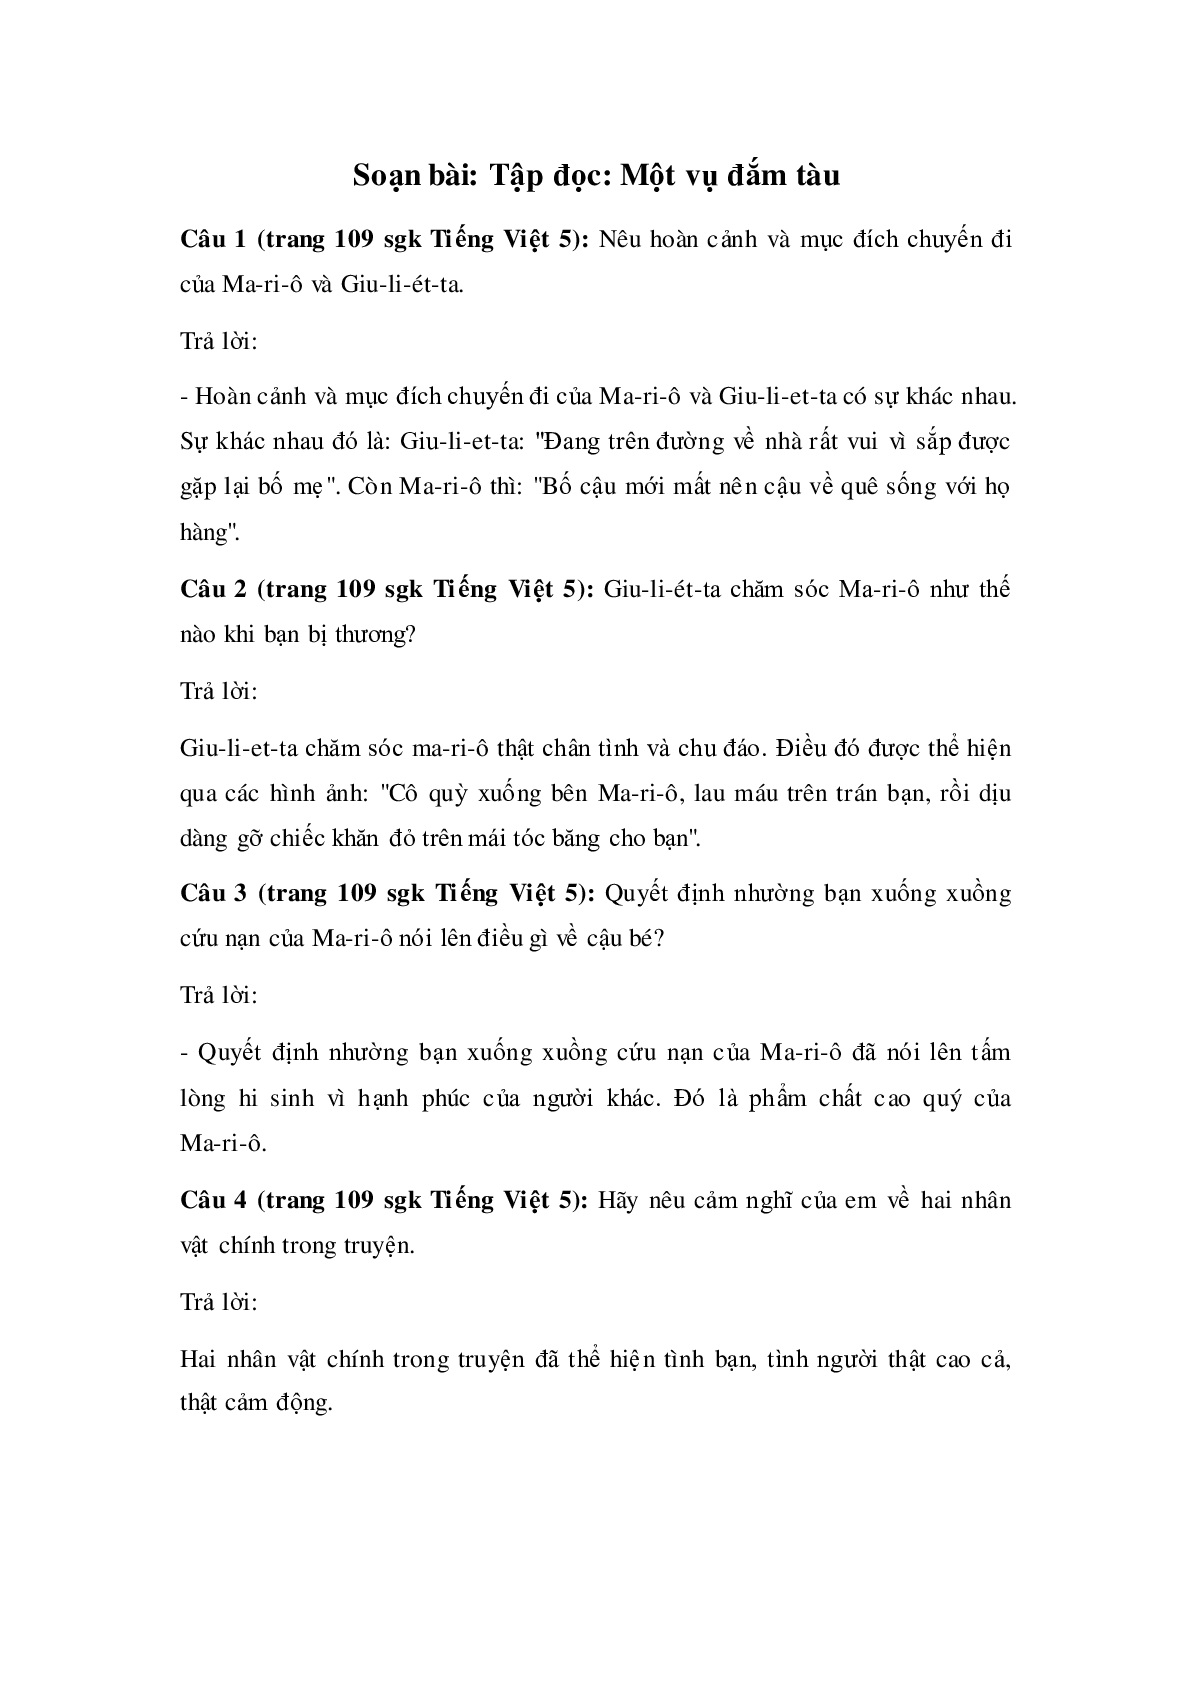 Soạn Tiếng Việt lớp 5: Tập đọc: Một vụ đắm tàu mới nhất (trang 1)